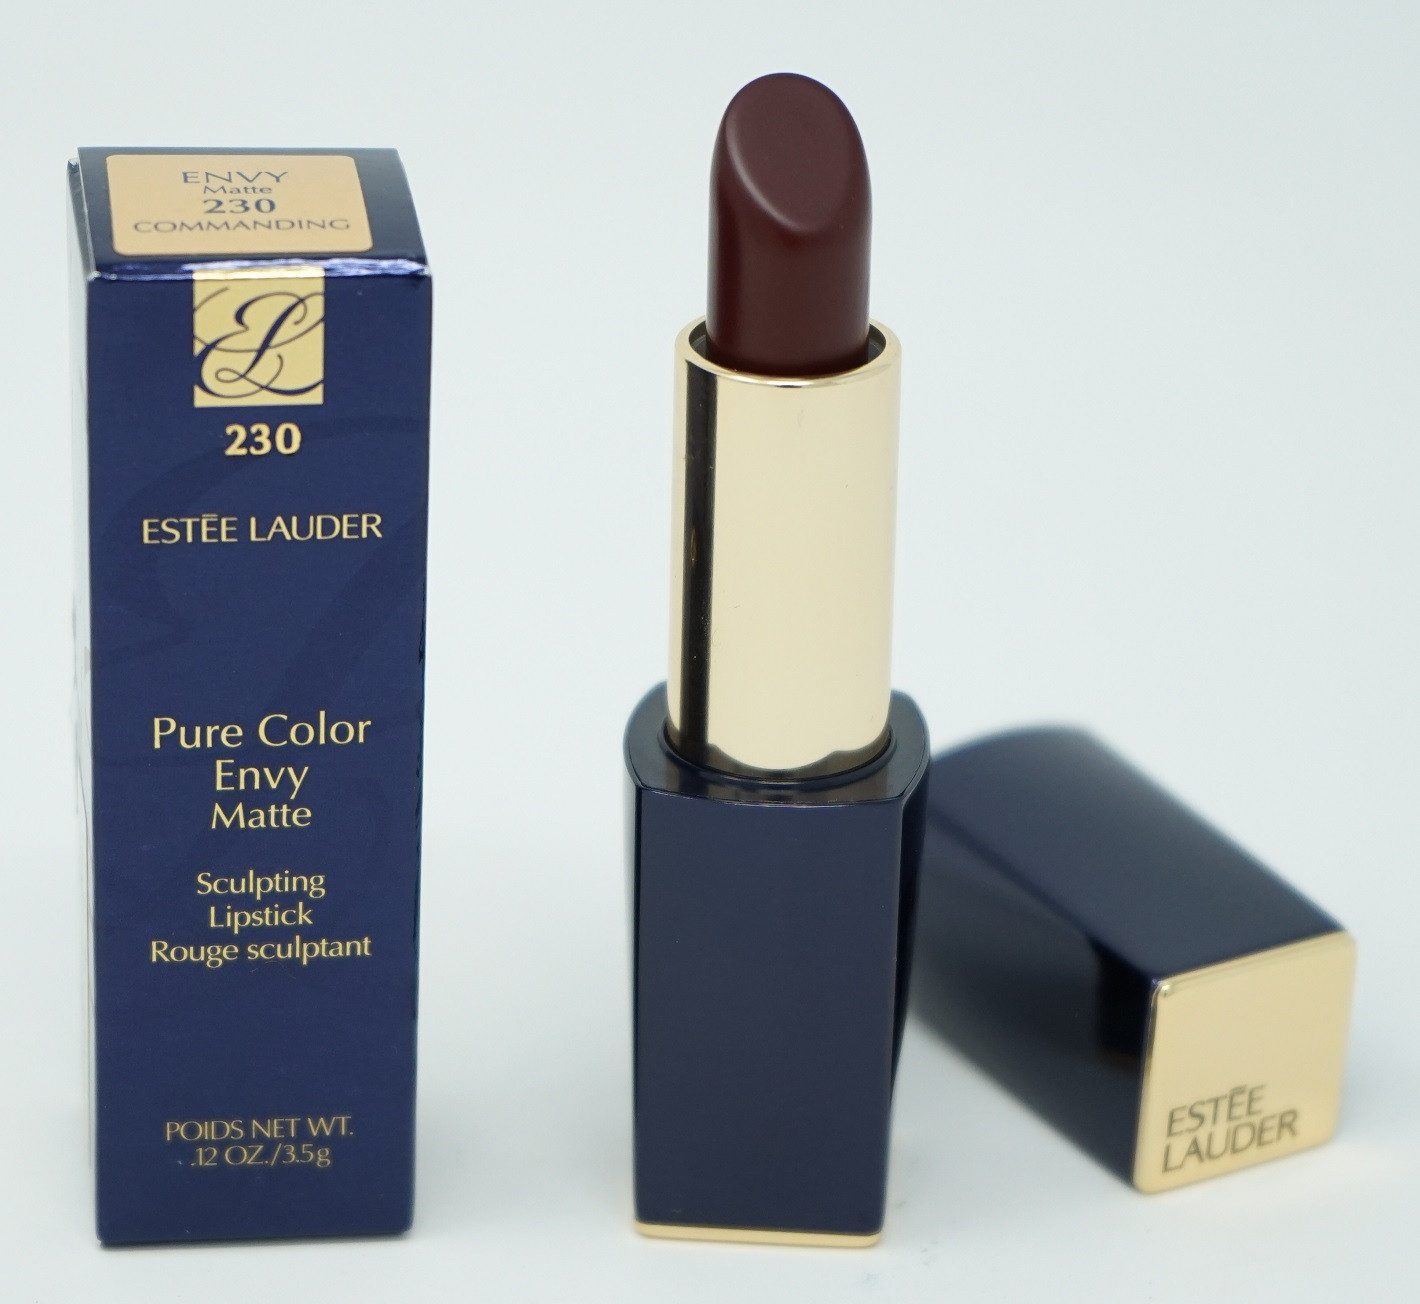 ESTÉE LAUDER Lippenstift Estee Lauder Pure Color Envy Matte Sculpting Lipstick 230 Commanding